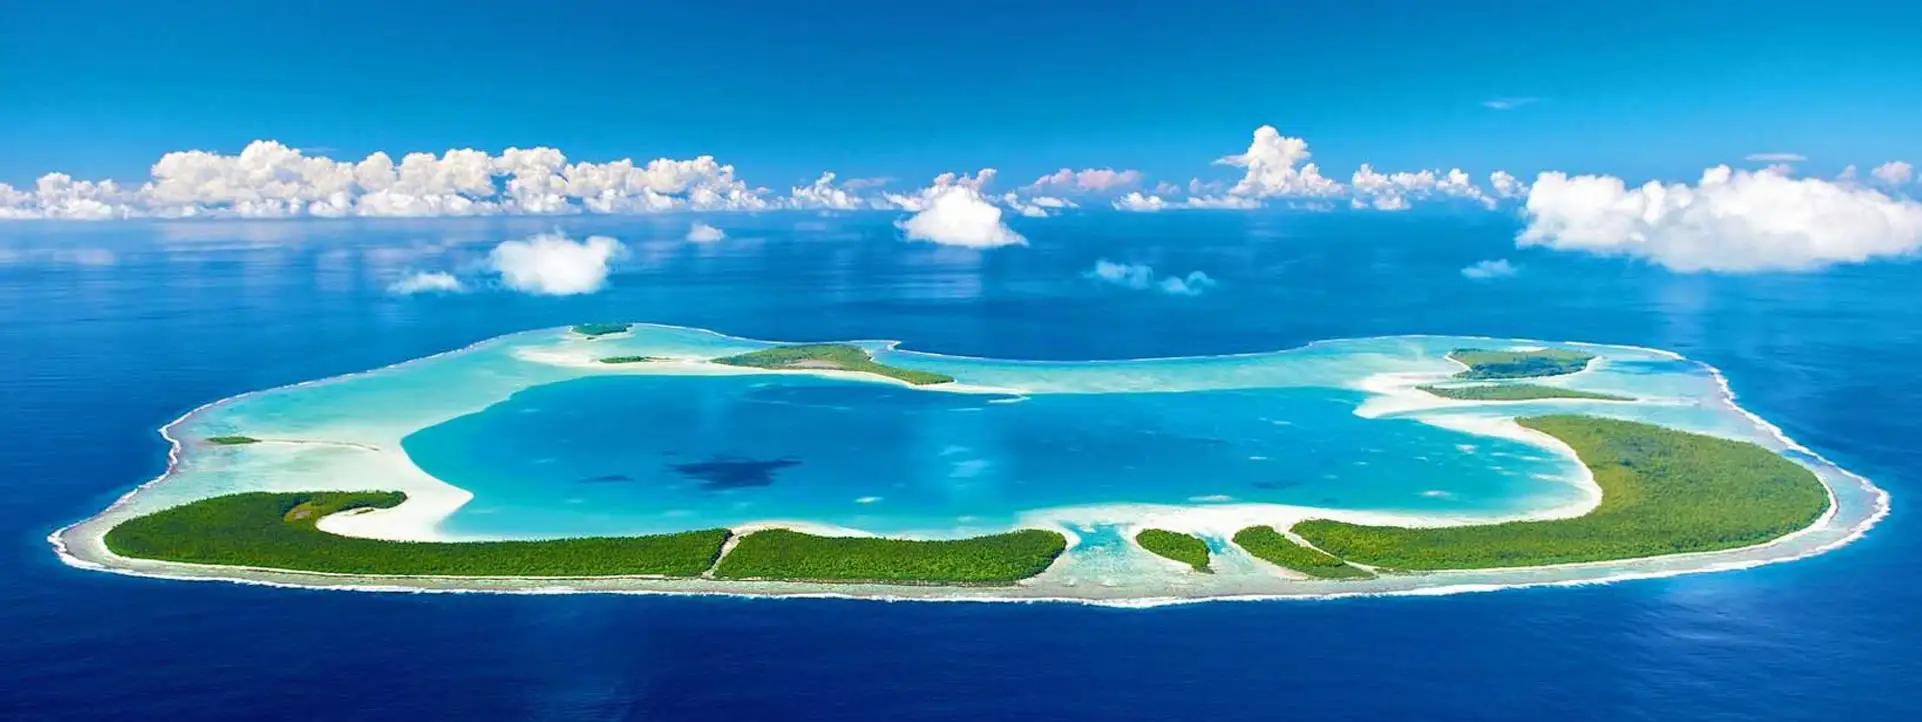 THE-BRANDO-TAHITI-Best-Honeymoon-destinations-of-the-world